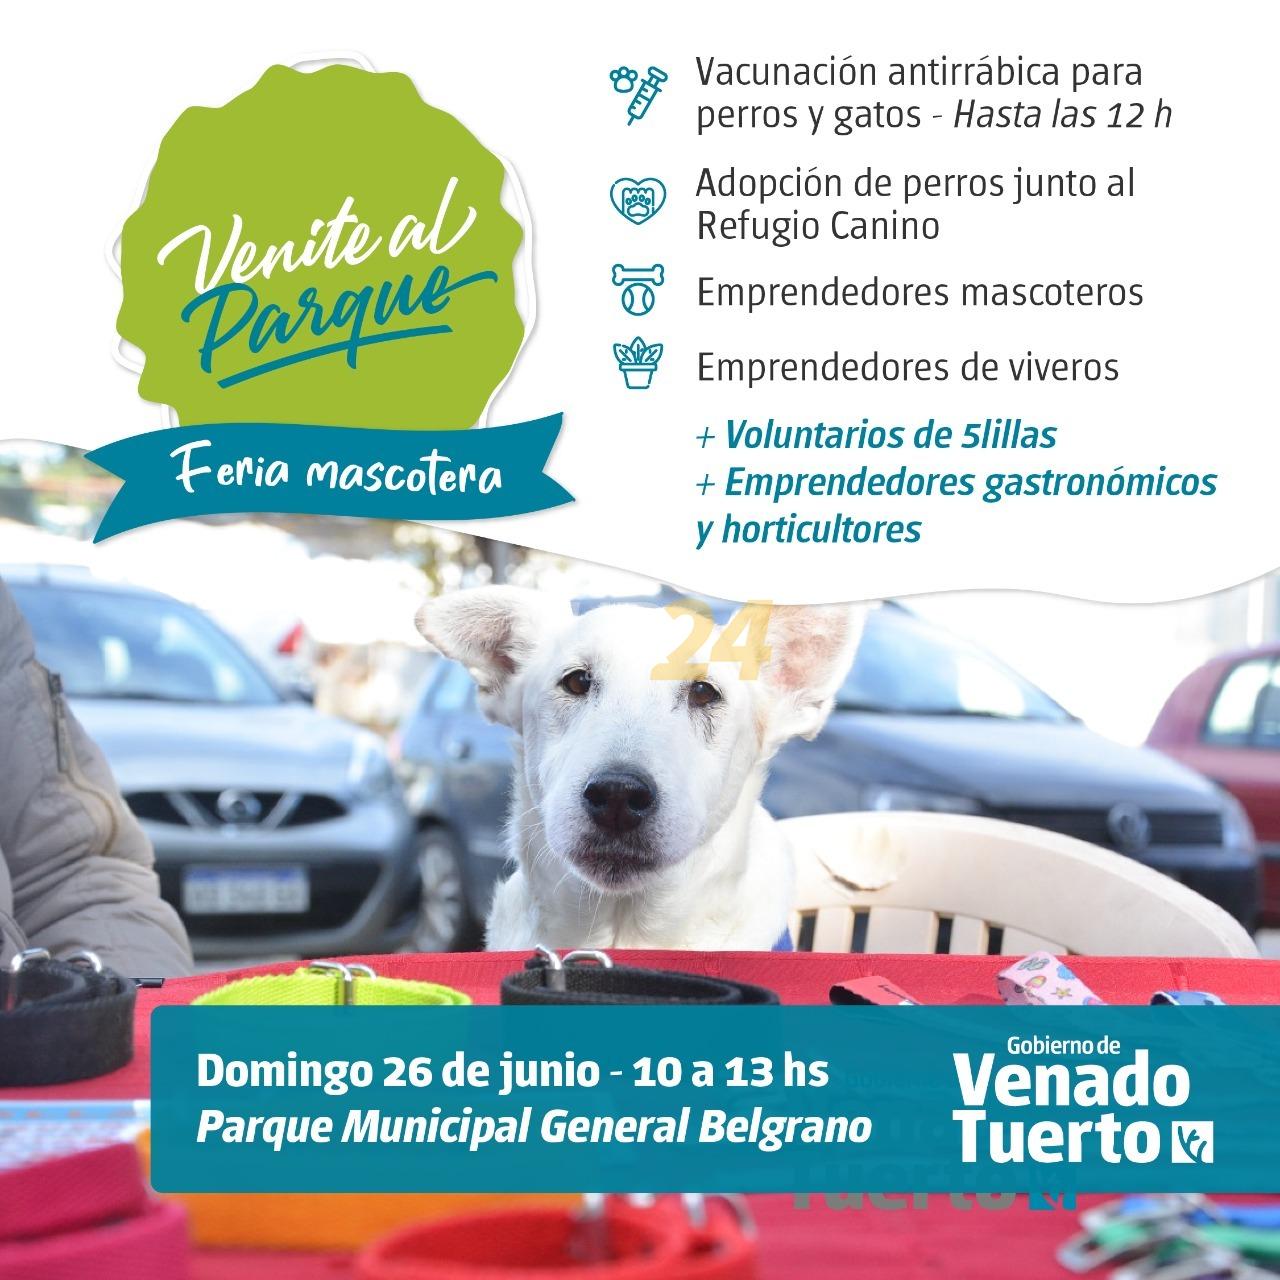 “Venite al Parque”: Feria Mascotera y adopción de perros